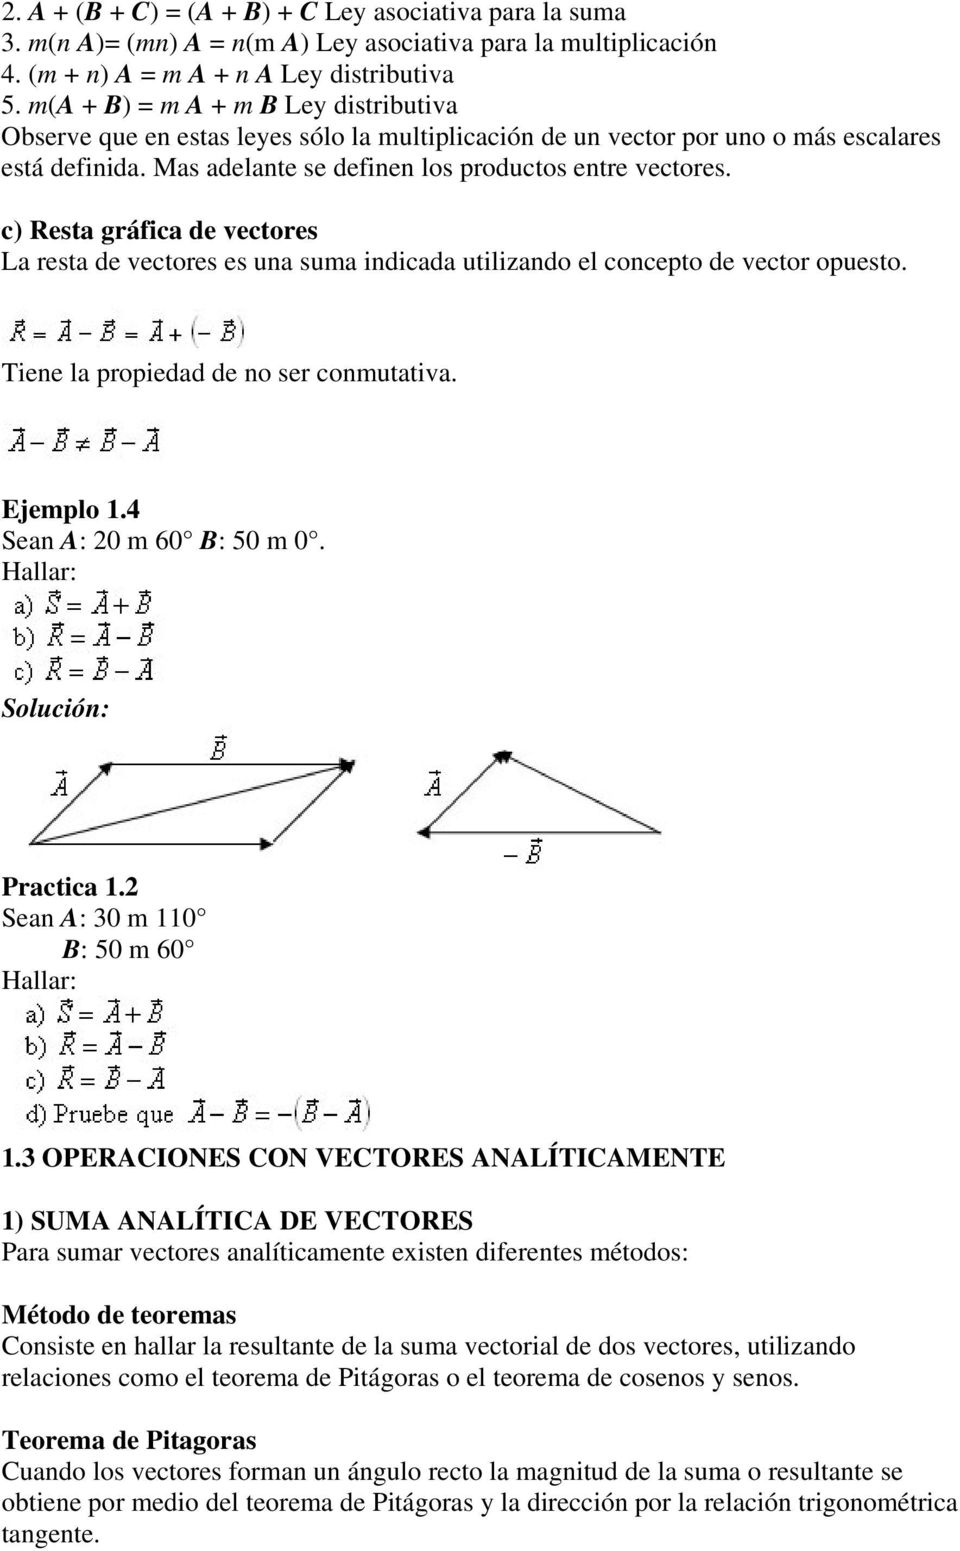 c) Resta gráfica de vectores La resta de vectores es una suma indicada utilizando el concepto de vector opuesto. Tiene la propiedad de no ser conmutativa. Ejemplo 1.4 Sean A: 20 m 60 B: 50 m 0.